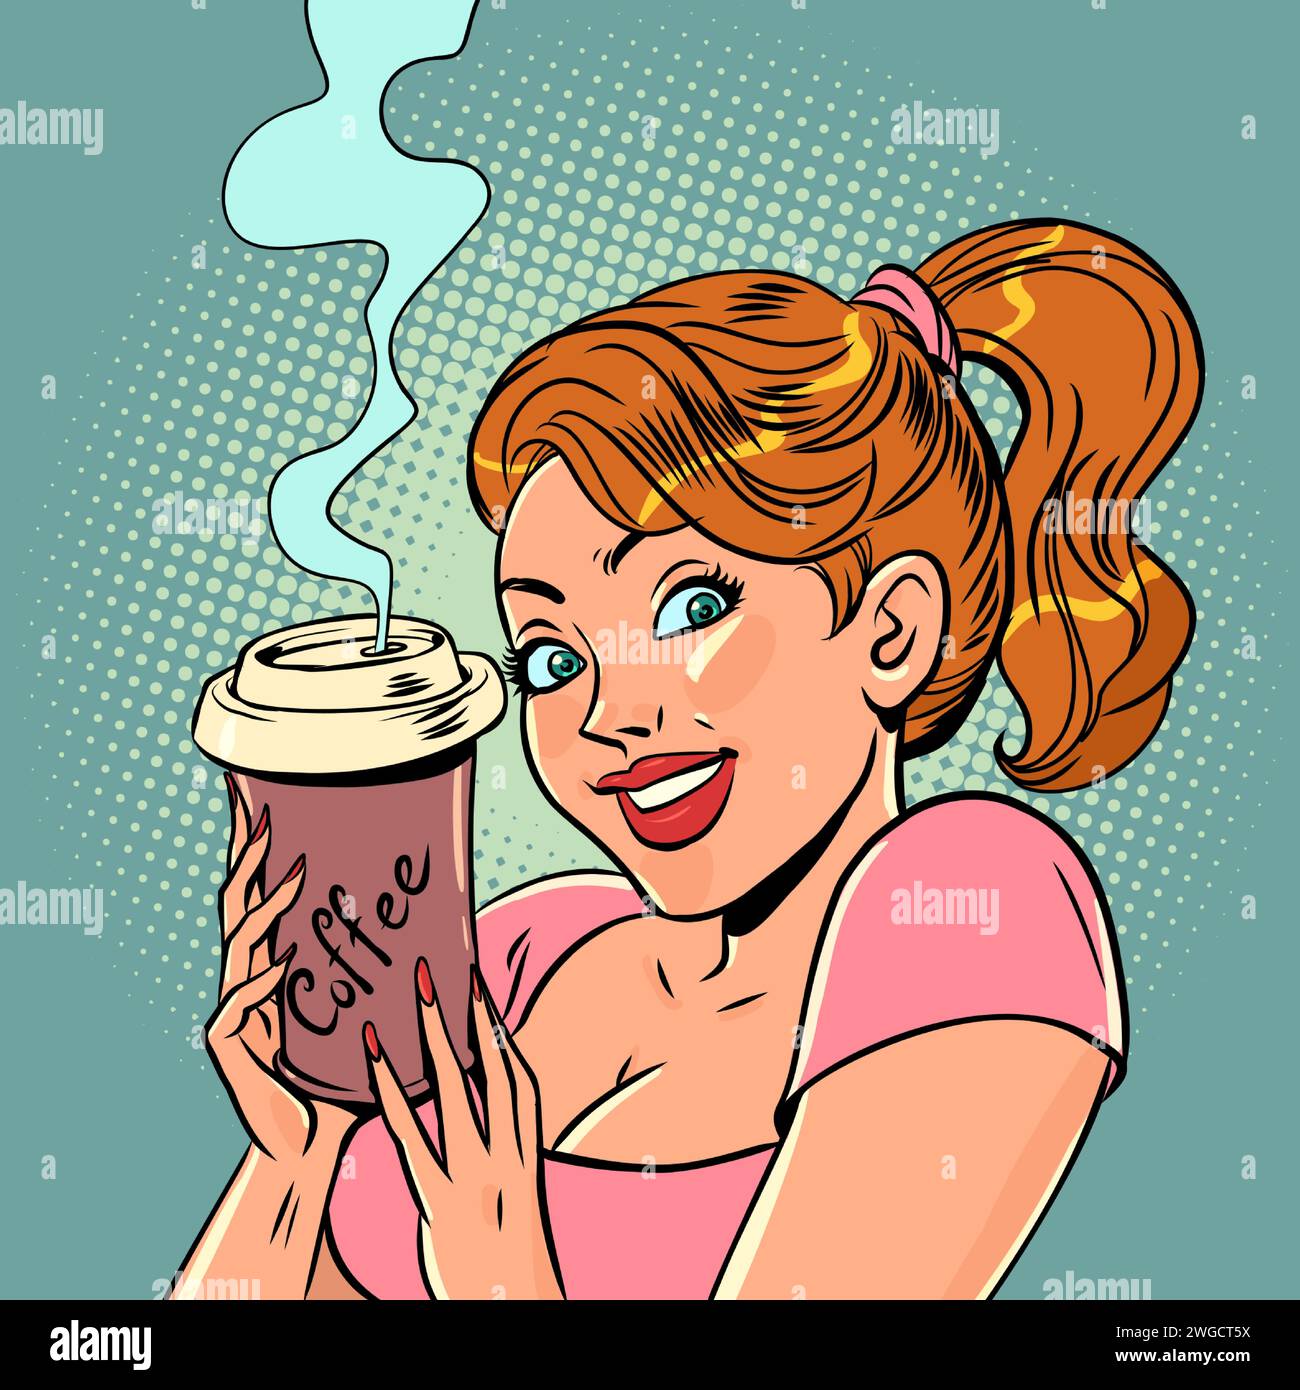 Offerta di bevande calde e deliziose. Una ragazza con i capelli rossi tiene in mano una tazza di caffè caldo. Cartoni animati a fumetti pop art illustrazione vettoriale retrò hand drawi Illustrazione Vettoriale